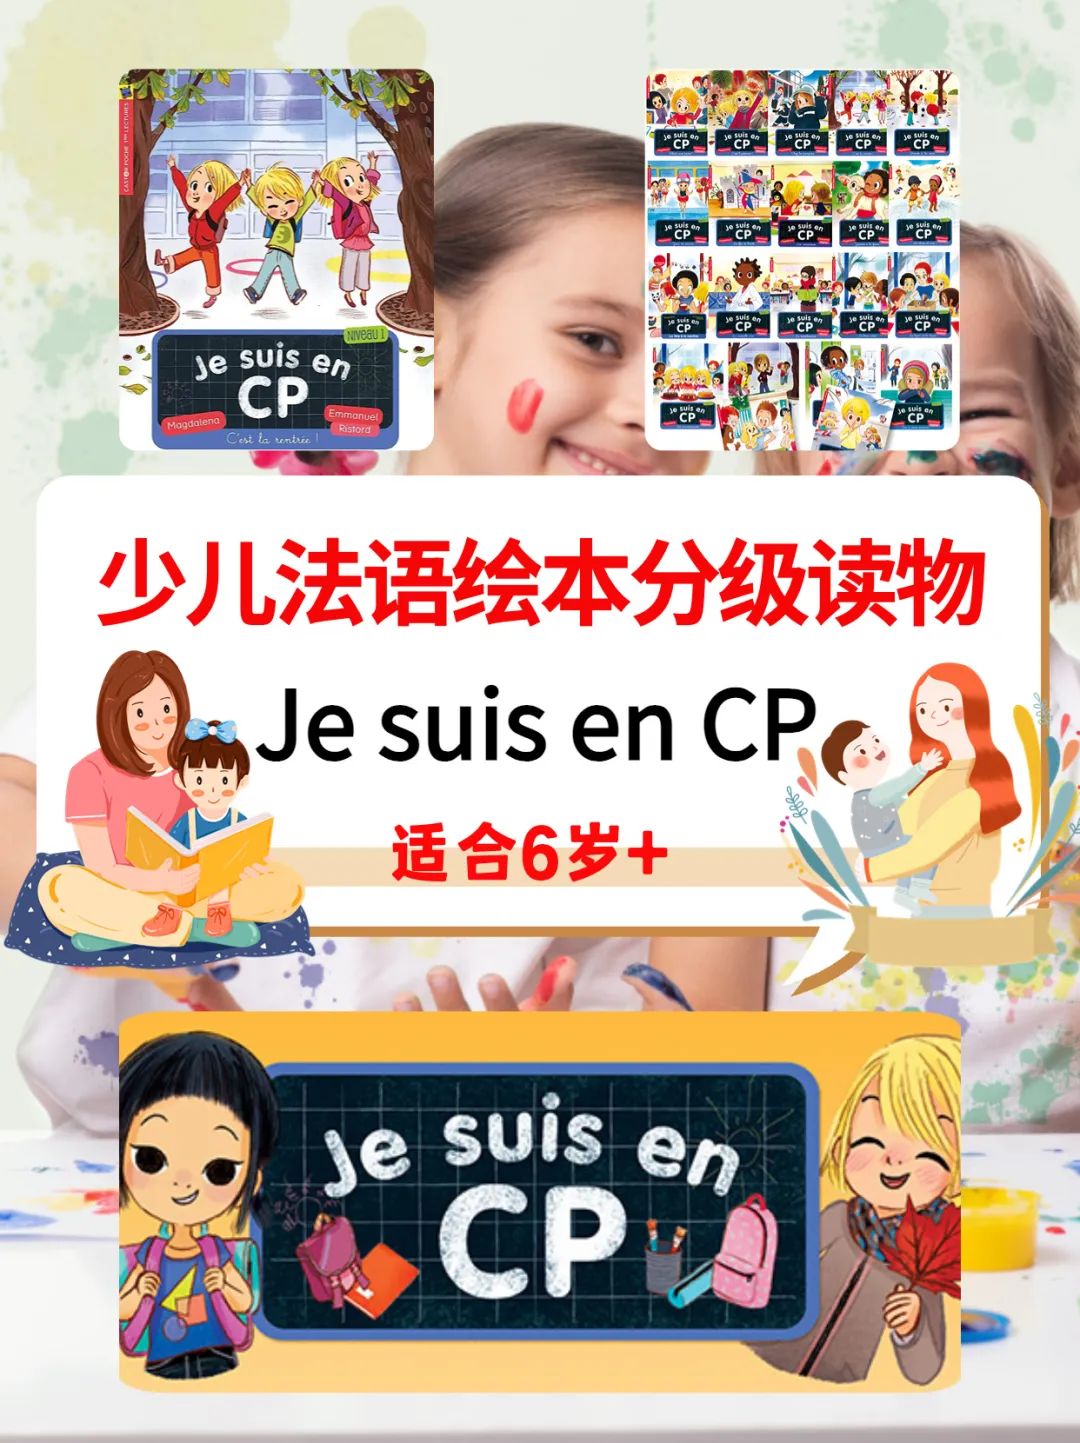 少儿法语绘本分级读物 JE SUIS EN CP C'est la rentrée ，适读6岁+